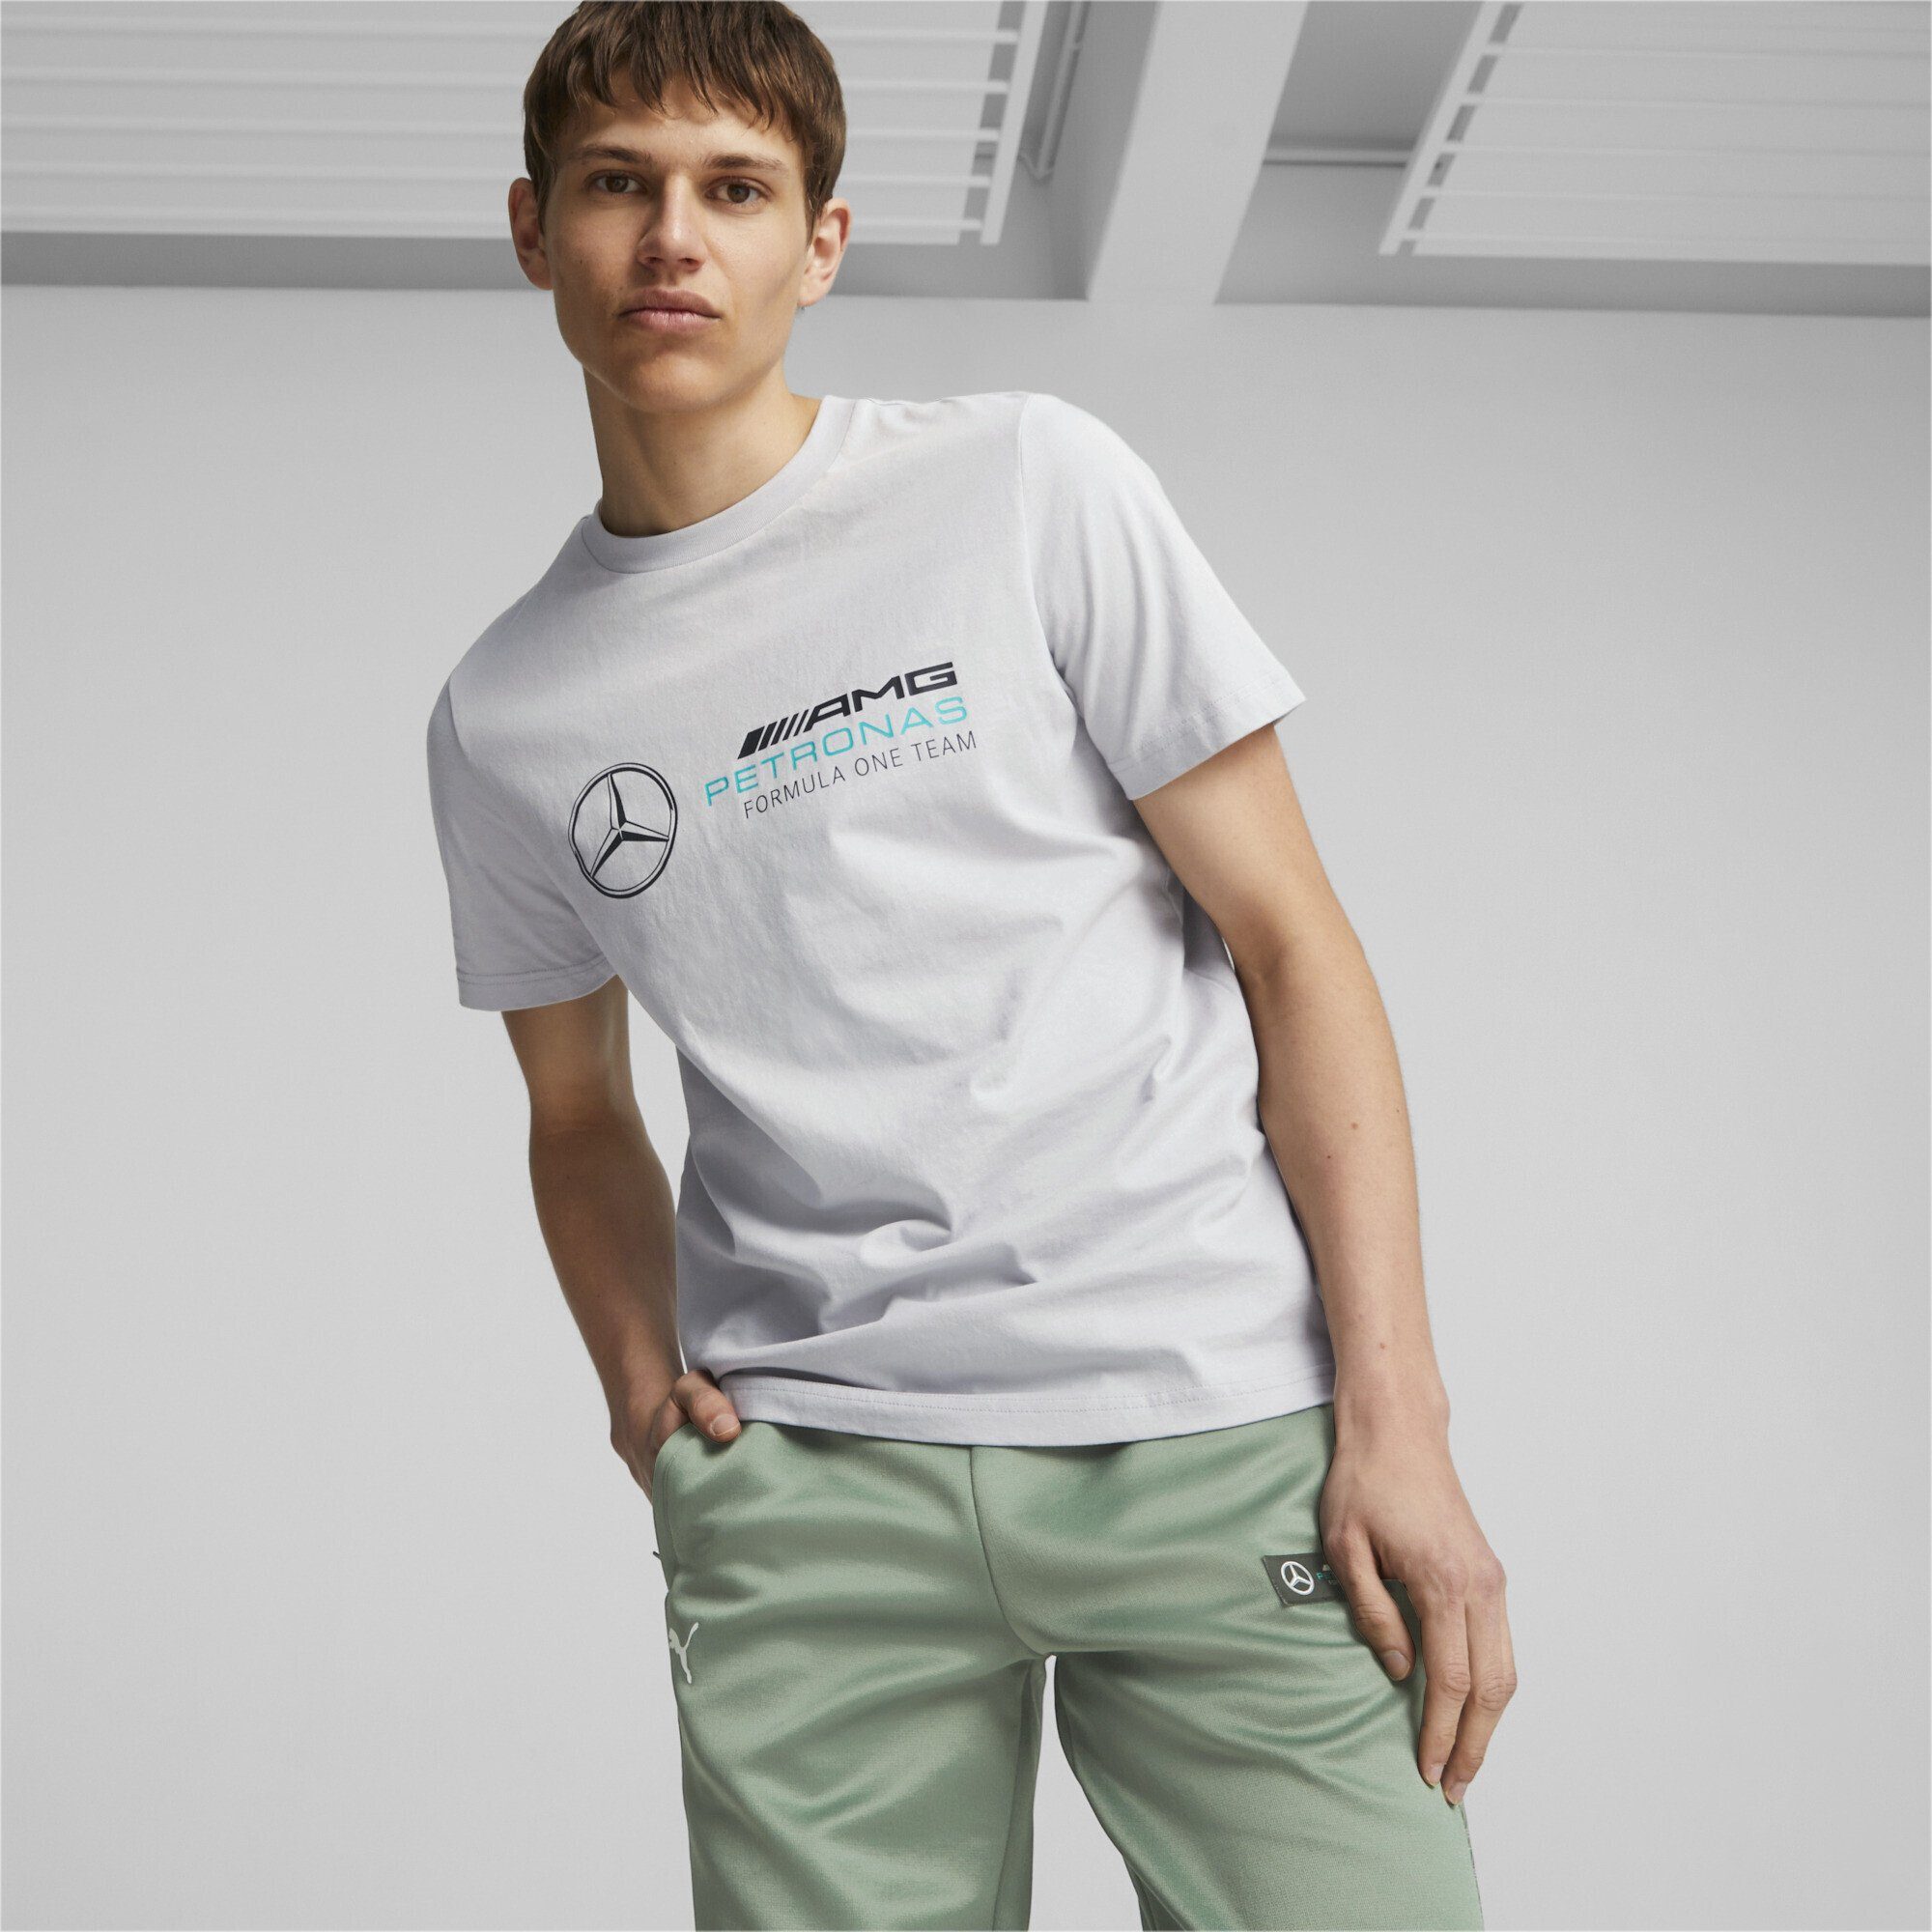 PETRONAS Silver Herren PUMA Mercedes-AMG Team Motorsport T-Shirt T-Shirt Gray Mercedes